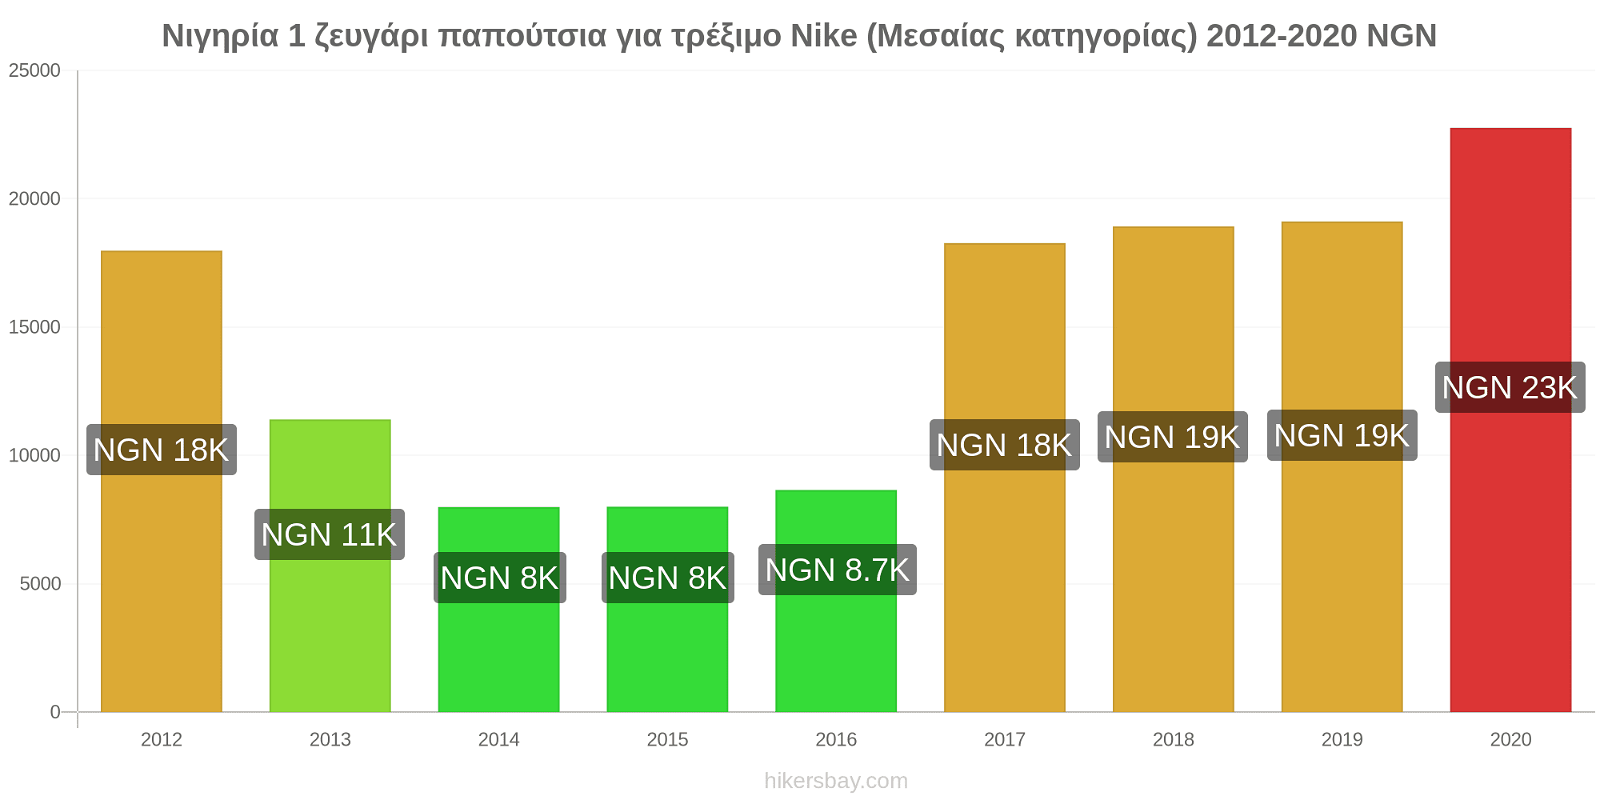 Νιγηρία αλλαγές τιμών 1 ζευγάρι παπούτσια για τρέξιμο Nike (Μεσαίας κατηγορίας) hikersbay.com